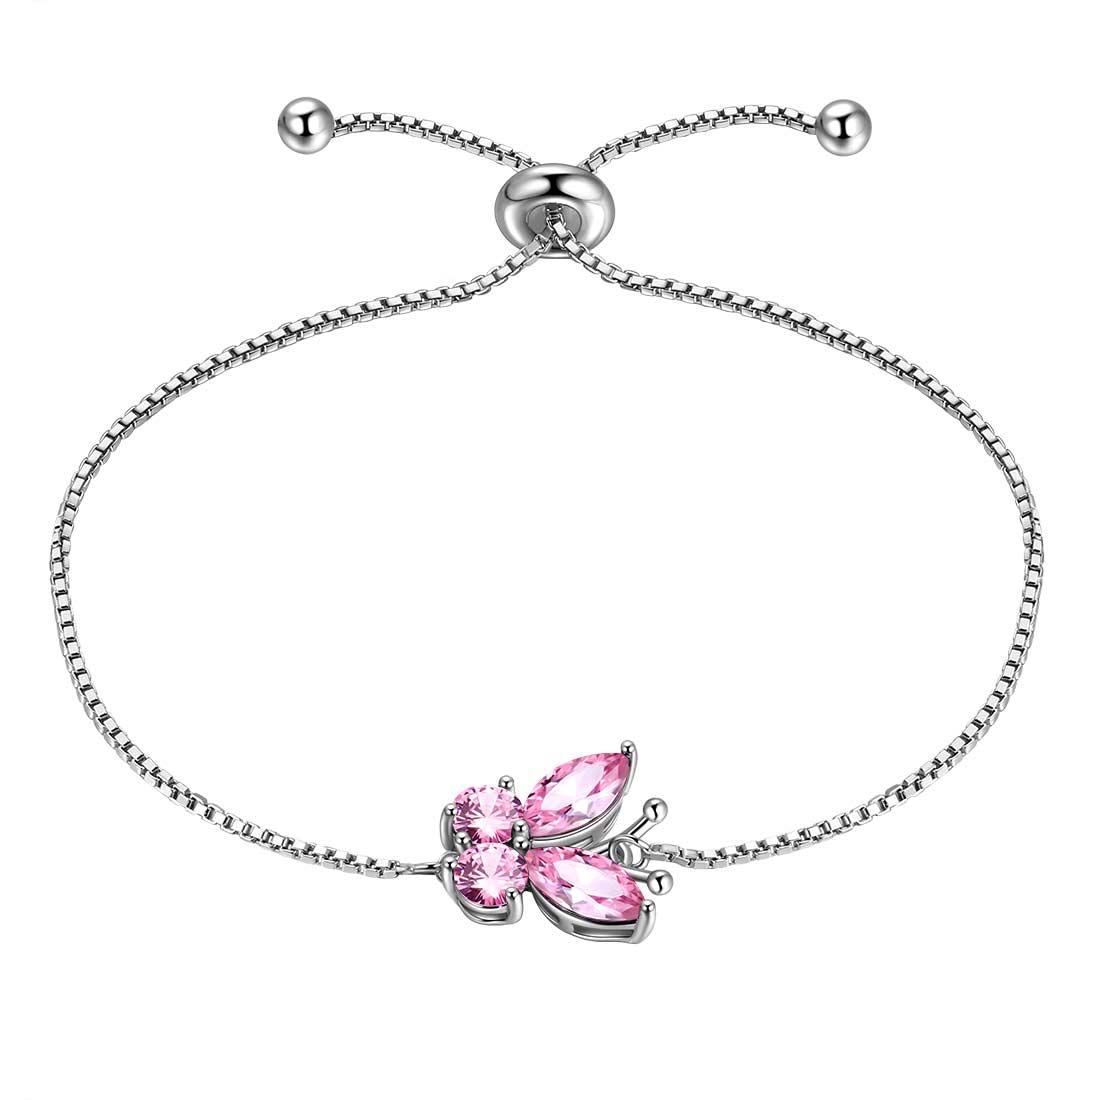 Silver Butterflies Bracelet